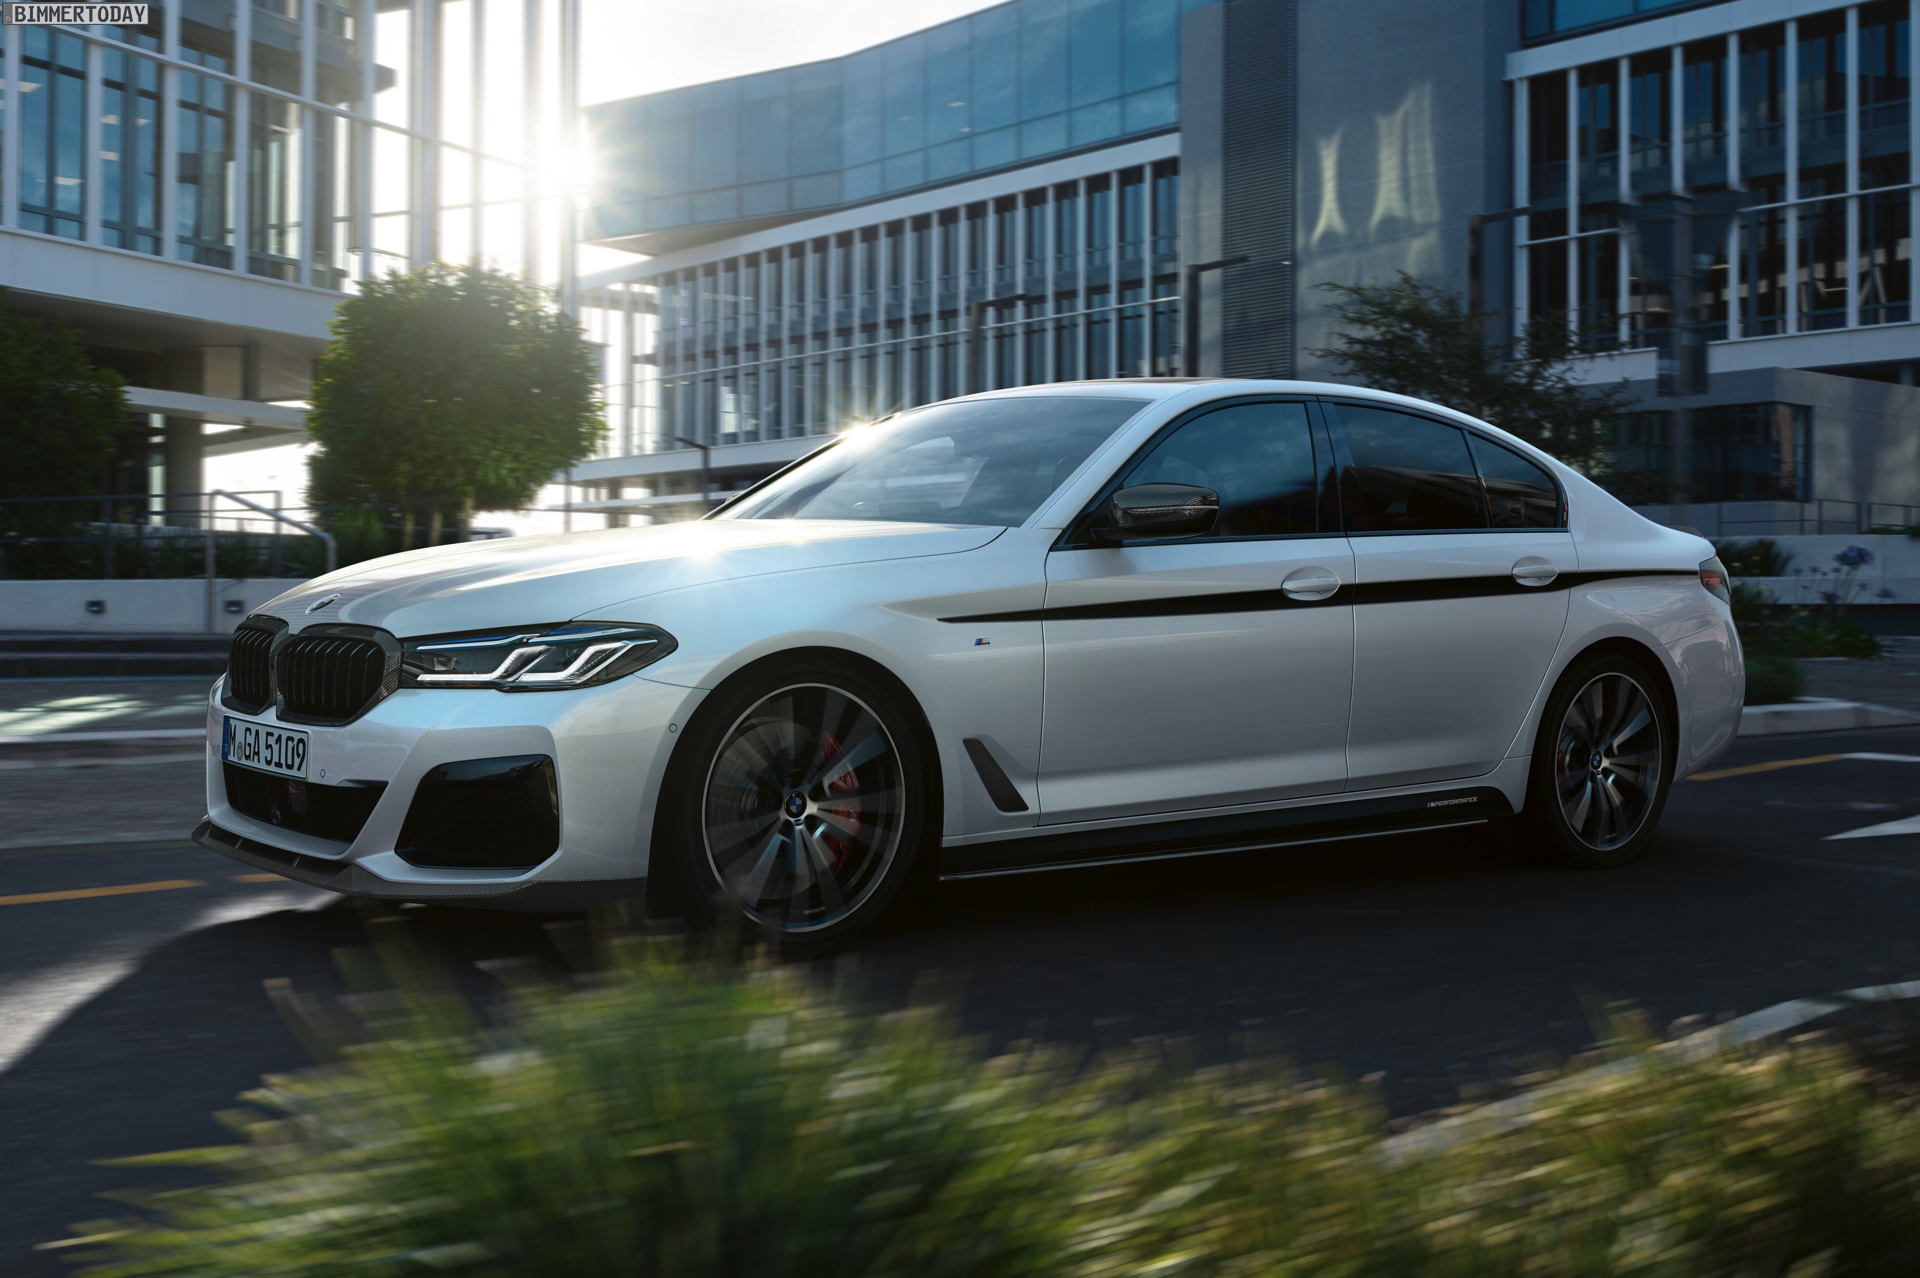 https://cdn.bimmertoday.de/wp-content/uploads/2020/05/2020-BMW-5er-Facelift-M-Performance-Tuning-Zubehoer-G30-LCI-01.jpg